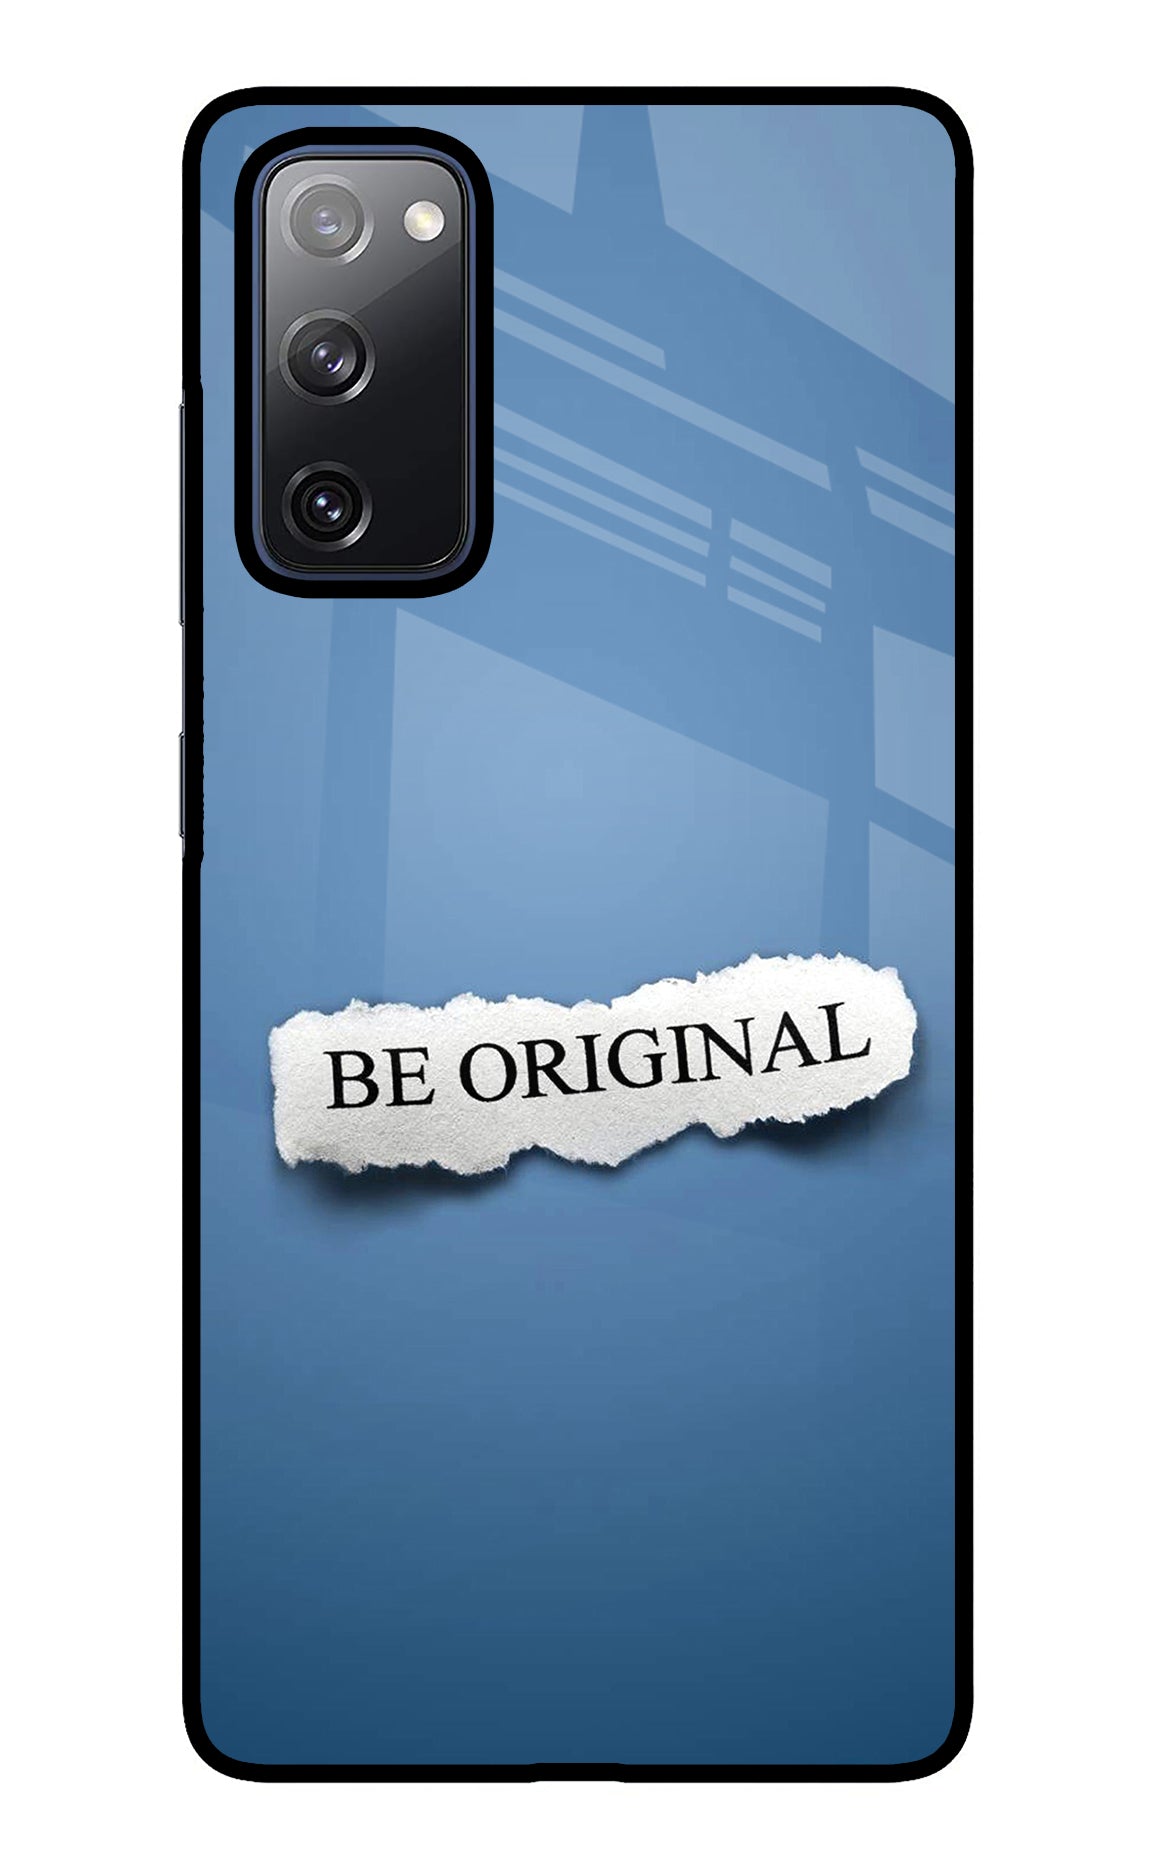 Be Original Samsung S20 FE Glass Case